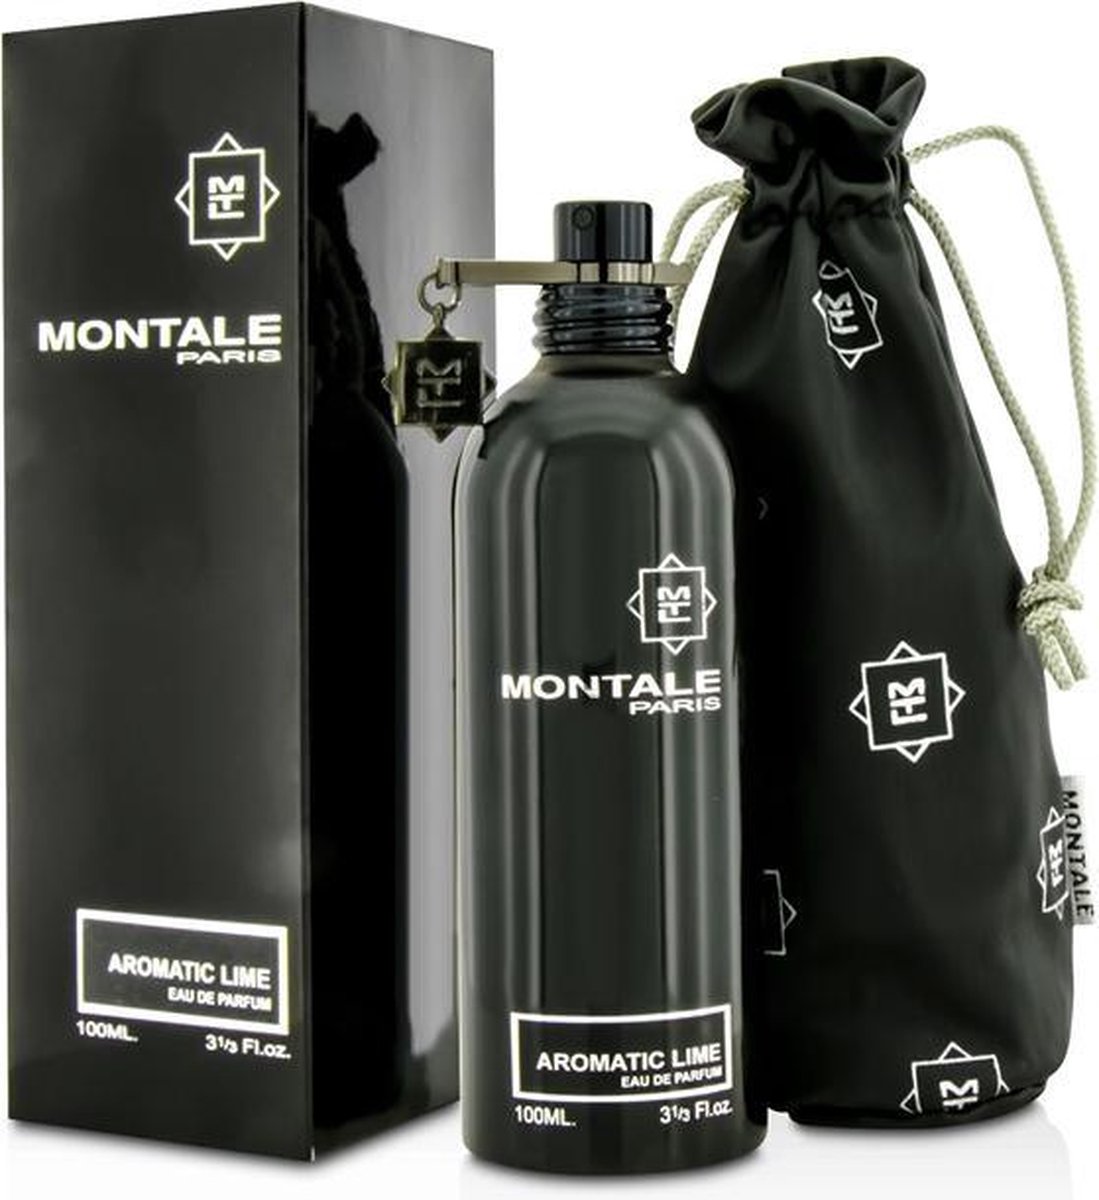 Montale Paris Aromatic Lime Eau de Parfum 100ml